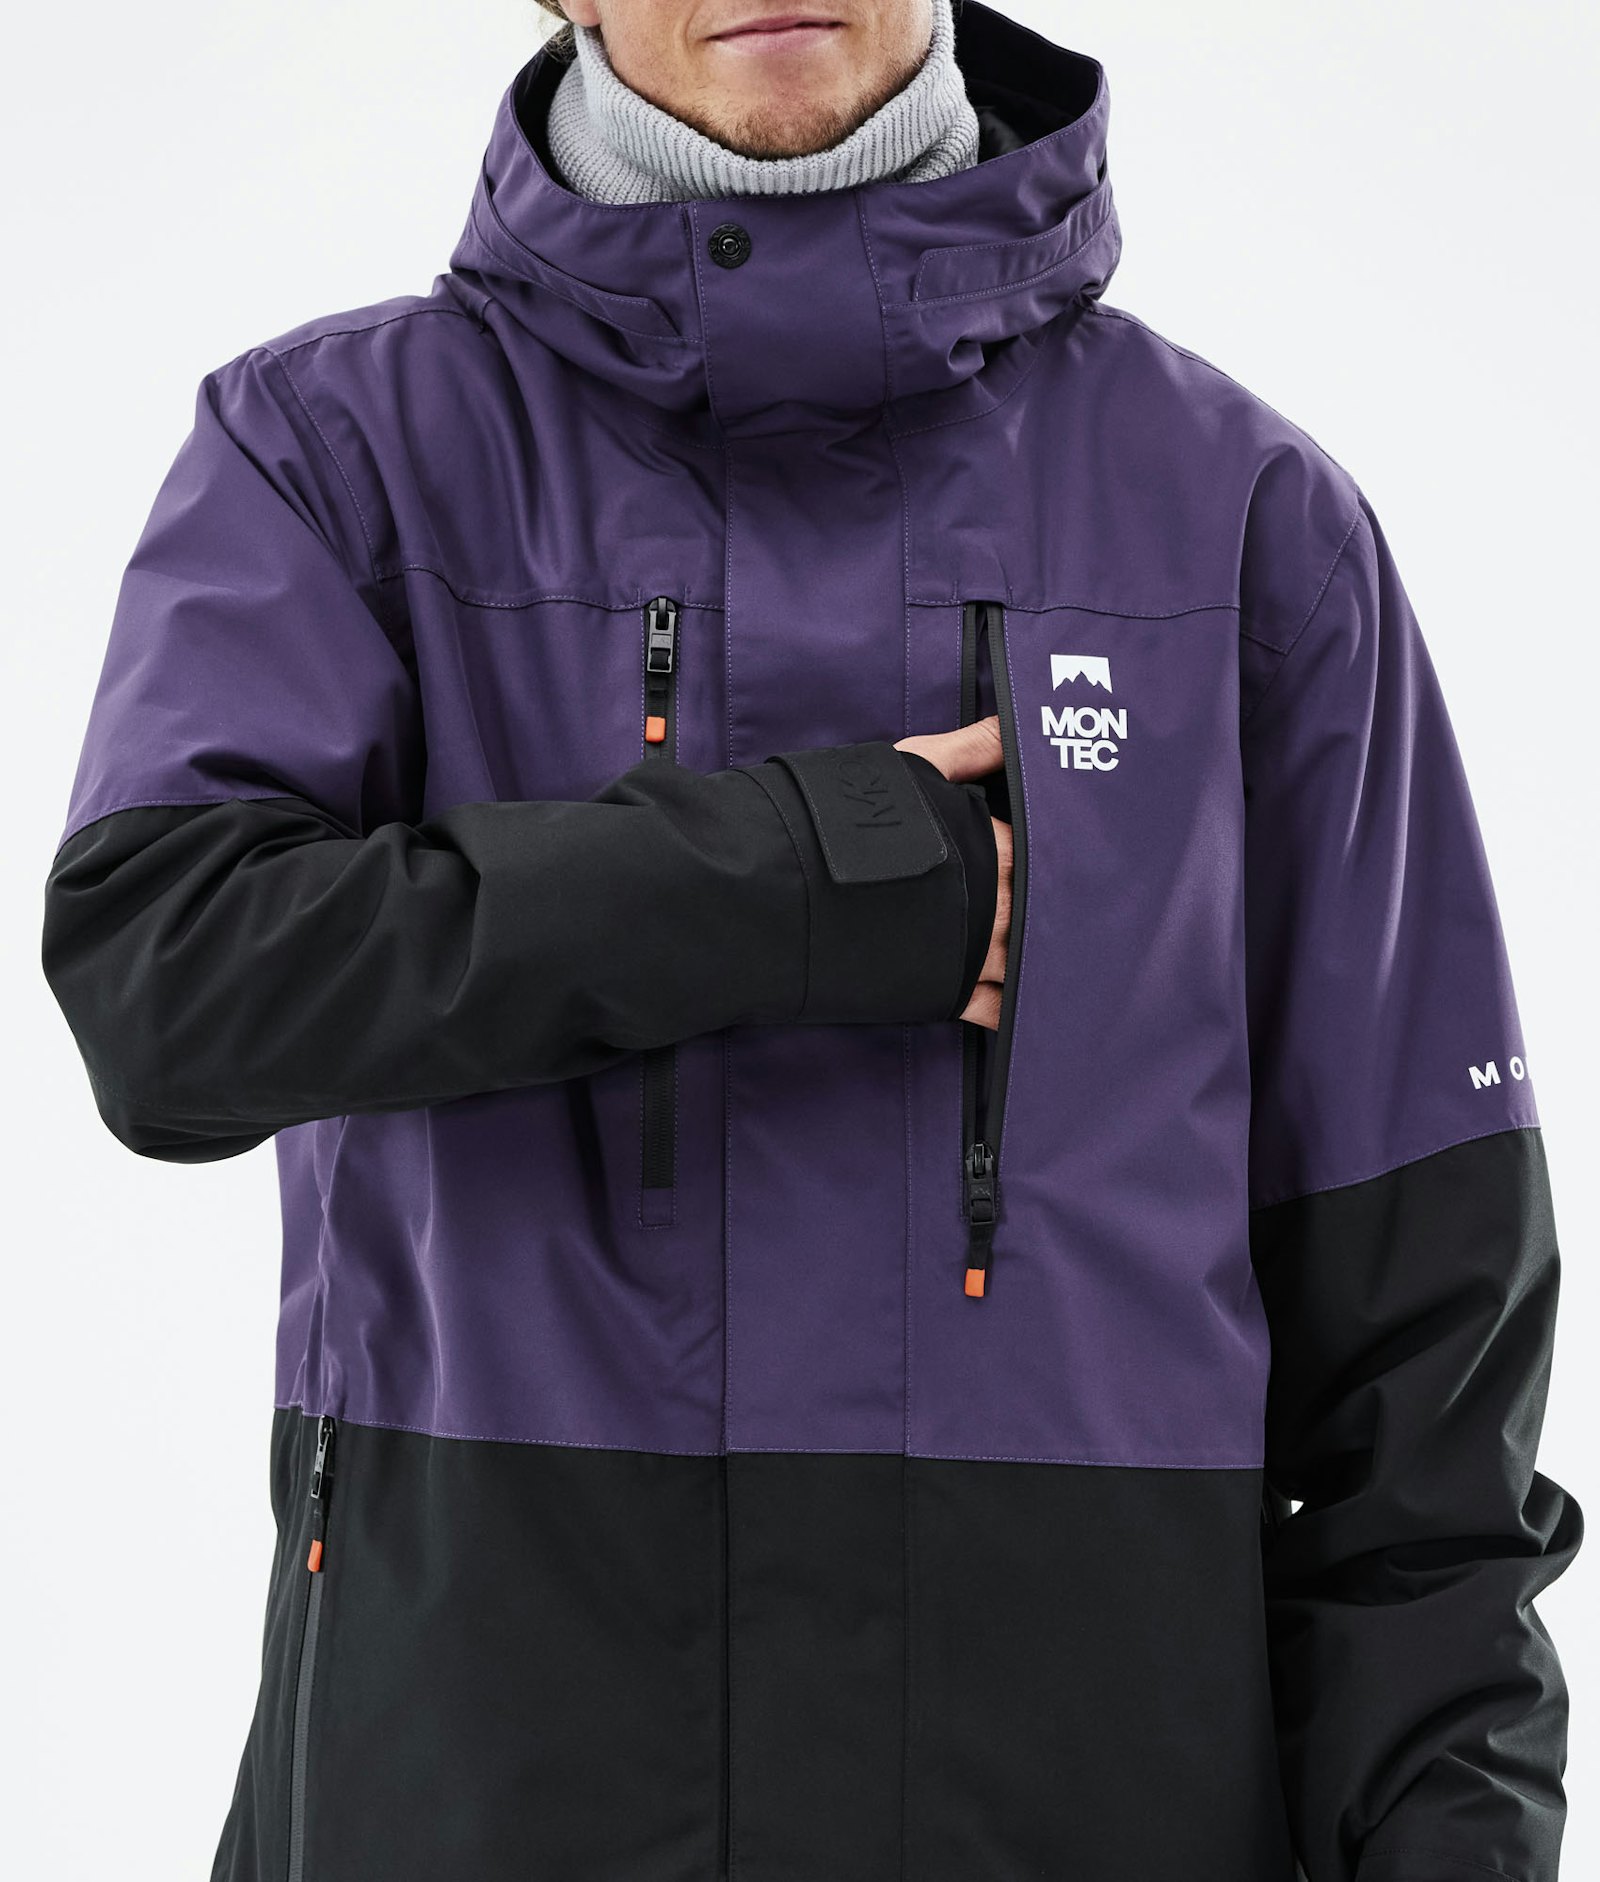 Fawk 2021 Skijakke Herre Purple/Black